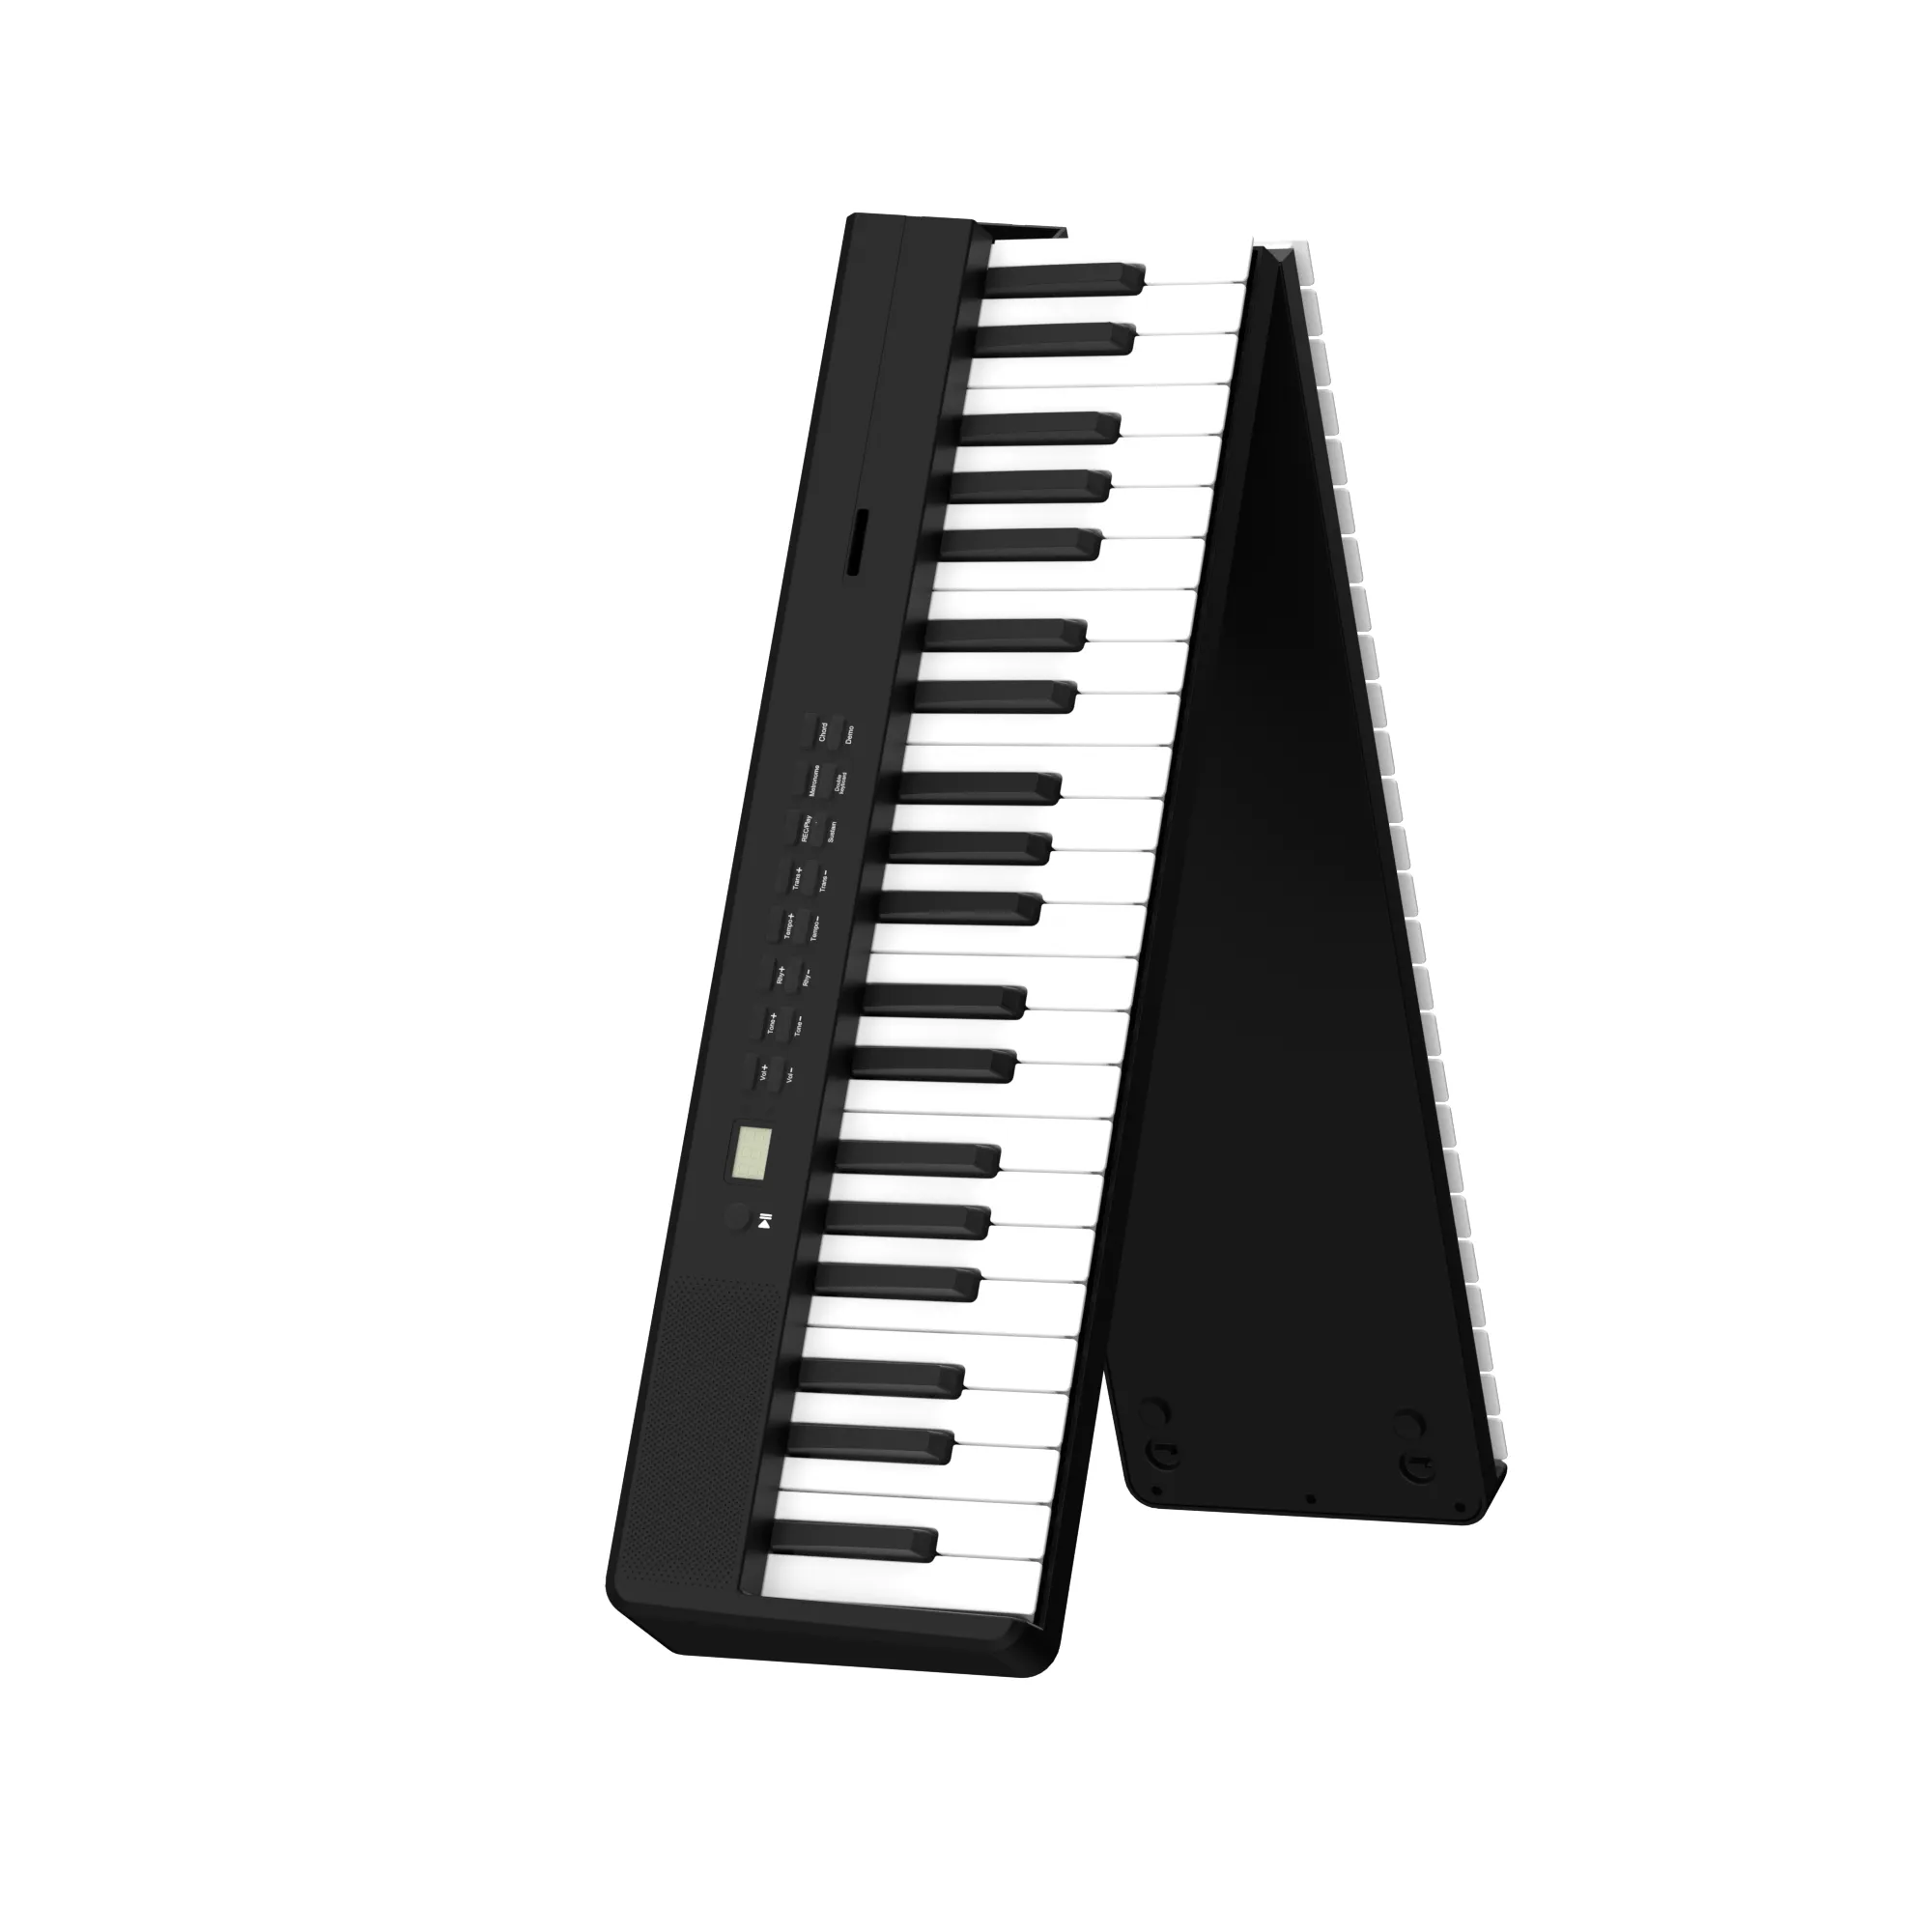 Bora Piano